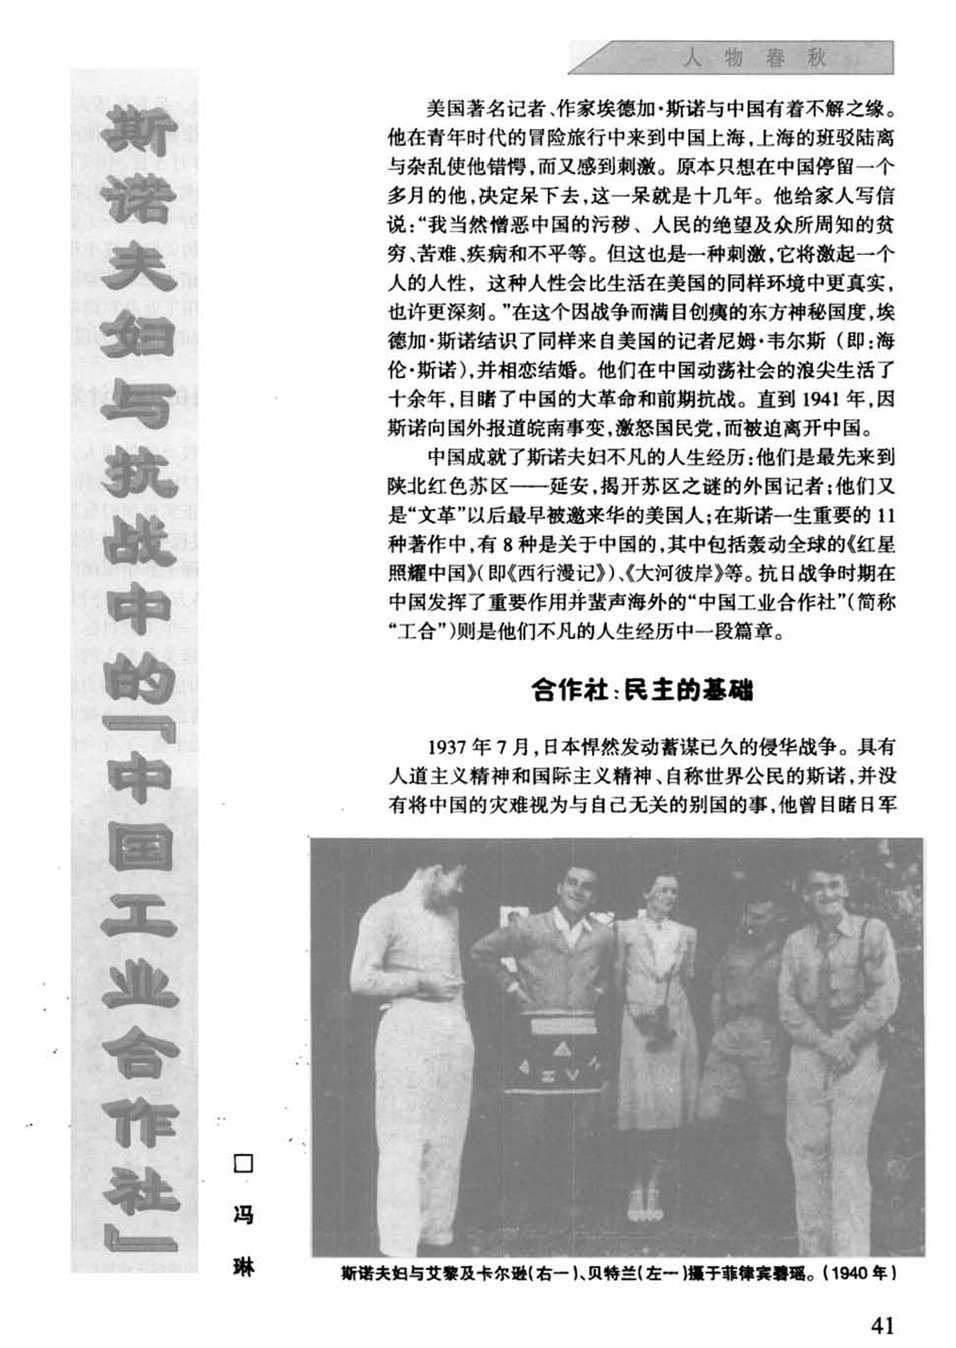 斯诺夫妇与抗战中的“中国工业合作社”_页面_1.jpg